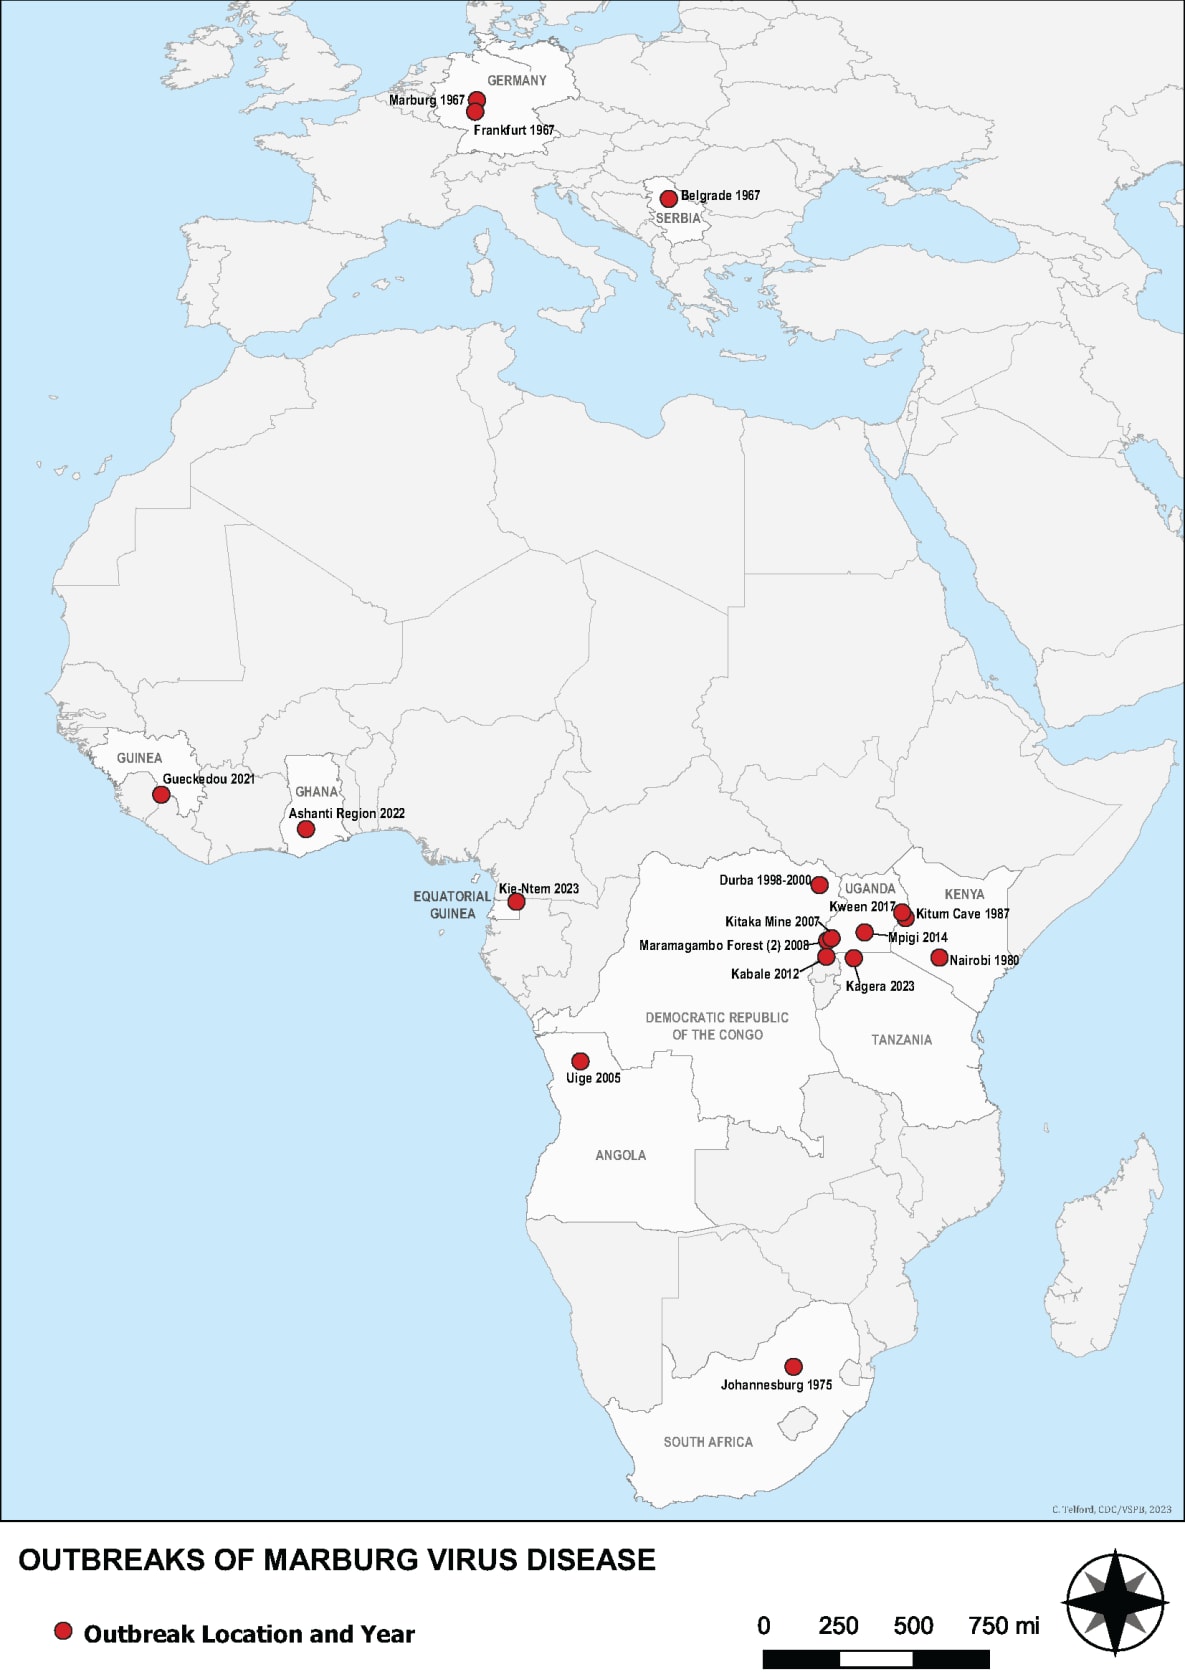 Countries reporting outbreaks of Marburg virus disease